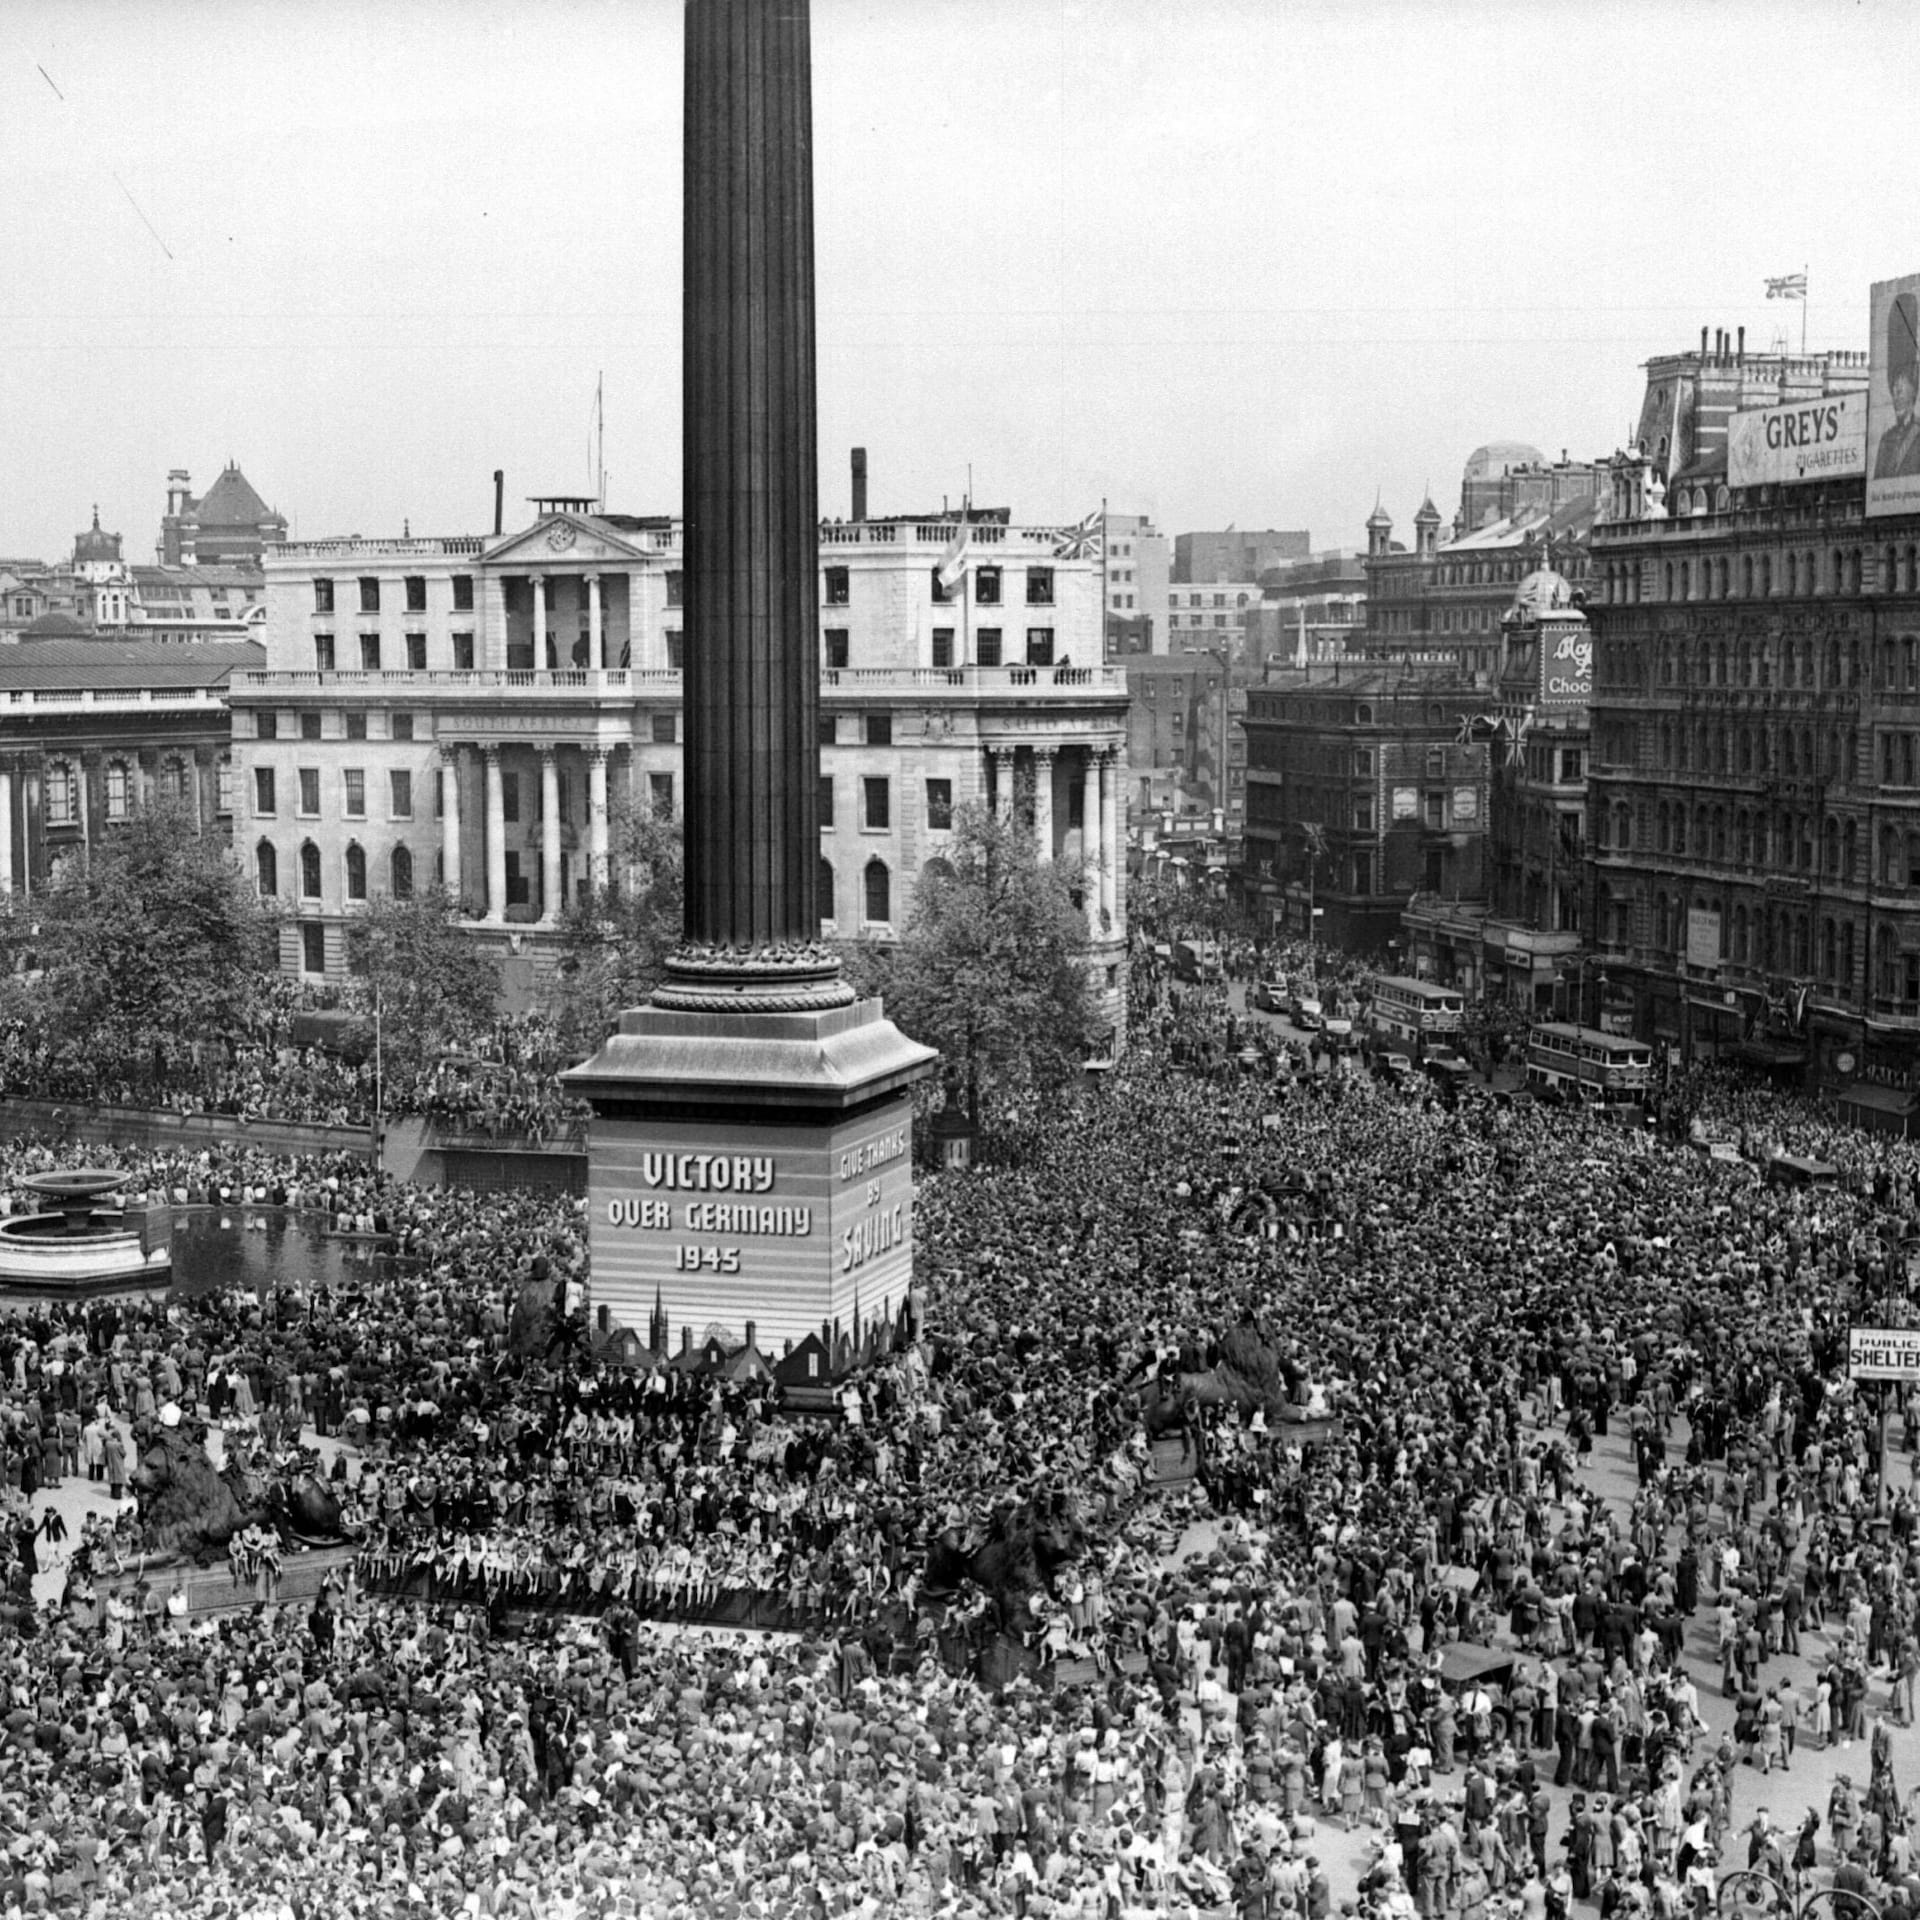 Crowds in Trafalgar Square celebrating.